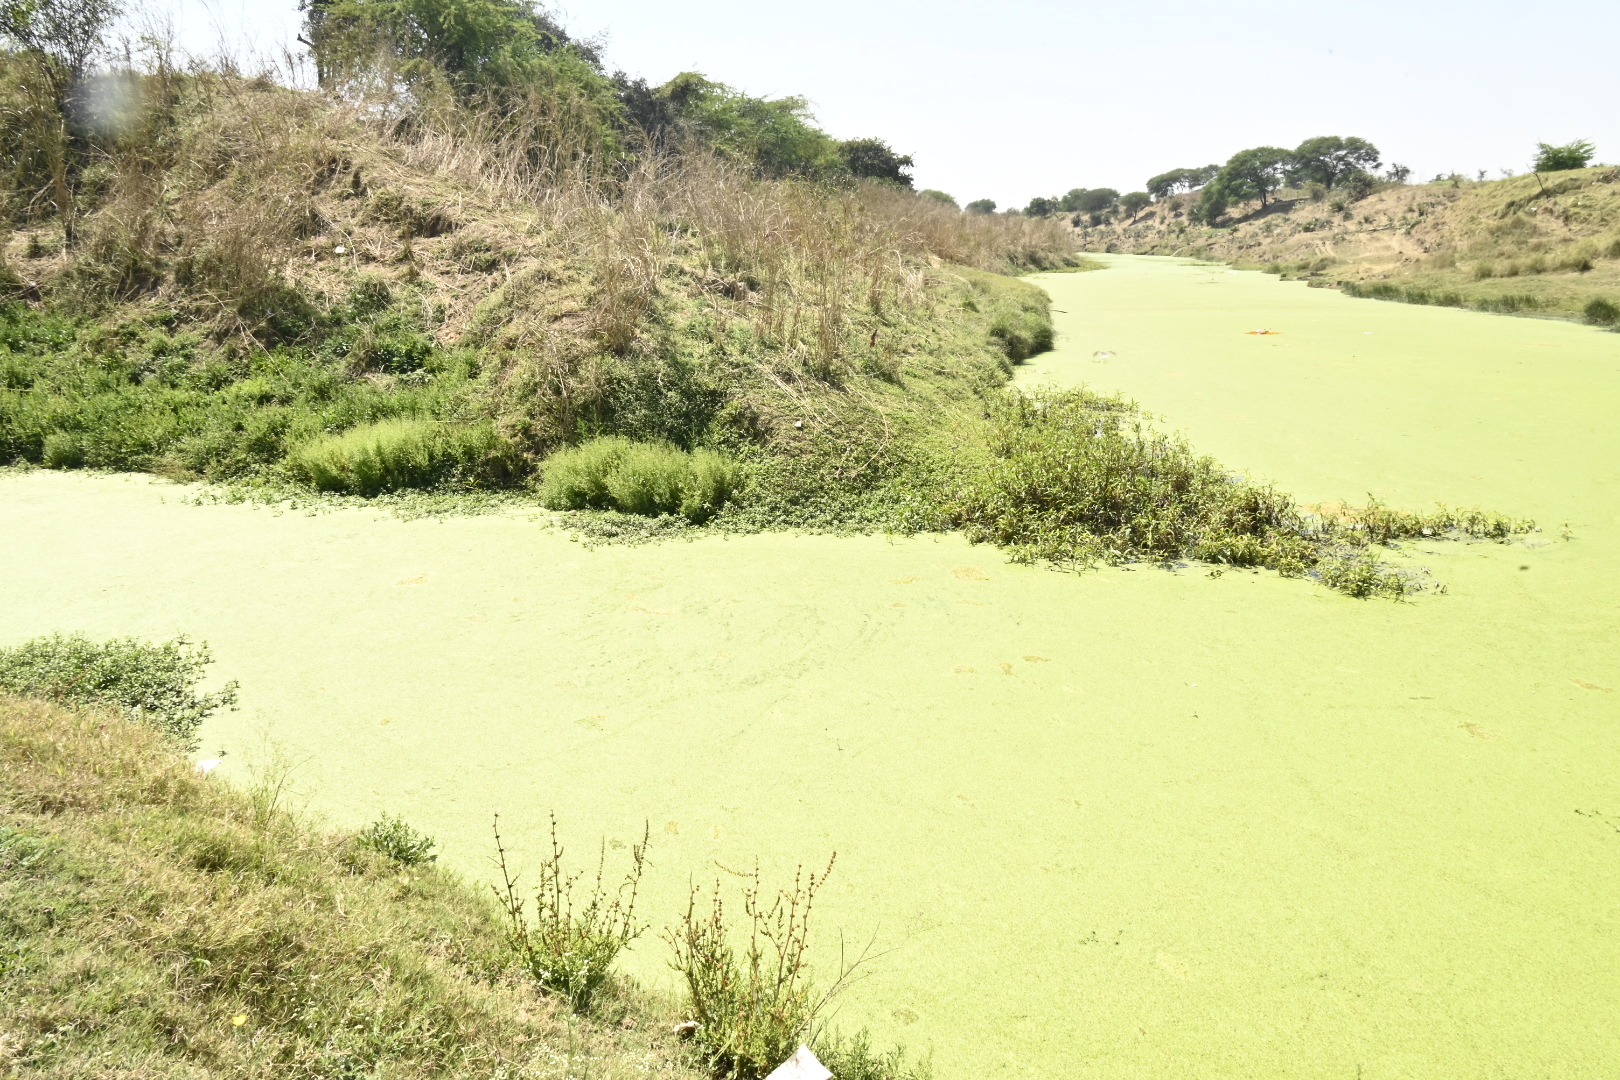 उद्योगों के जहरीले पानी से शिप्रा का आंचल मैला, 10 किमी के दायरे में बंजर हुई
जमीन